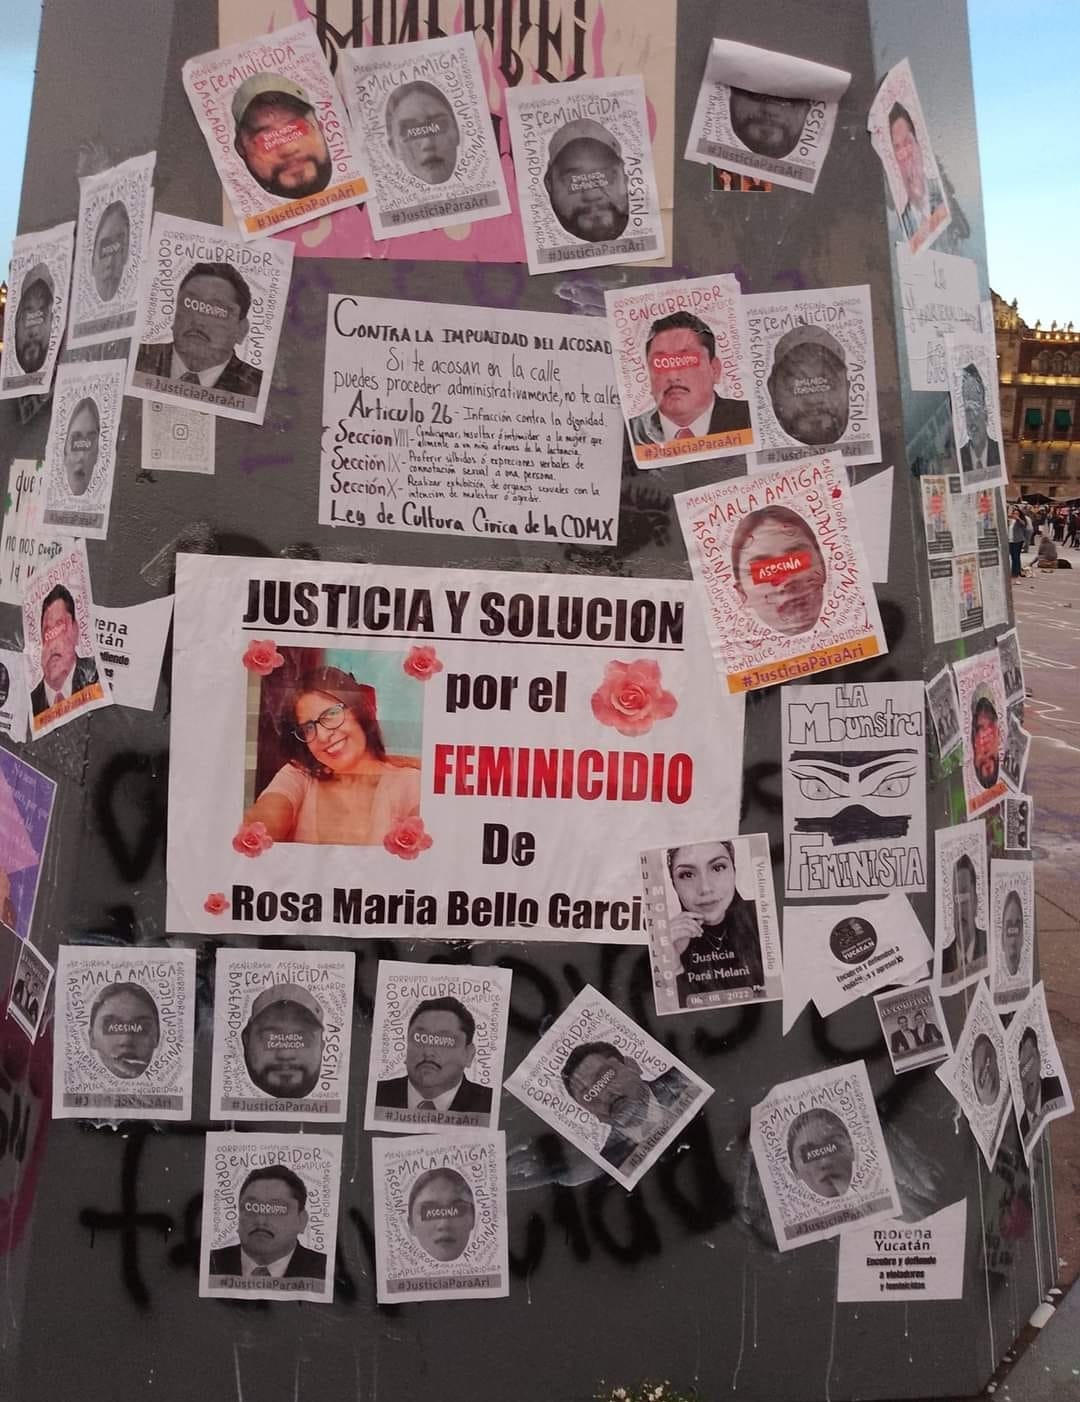 La familia de Rosa María pide justicia. (Cortesía)